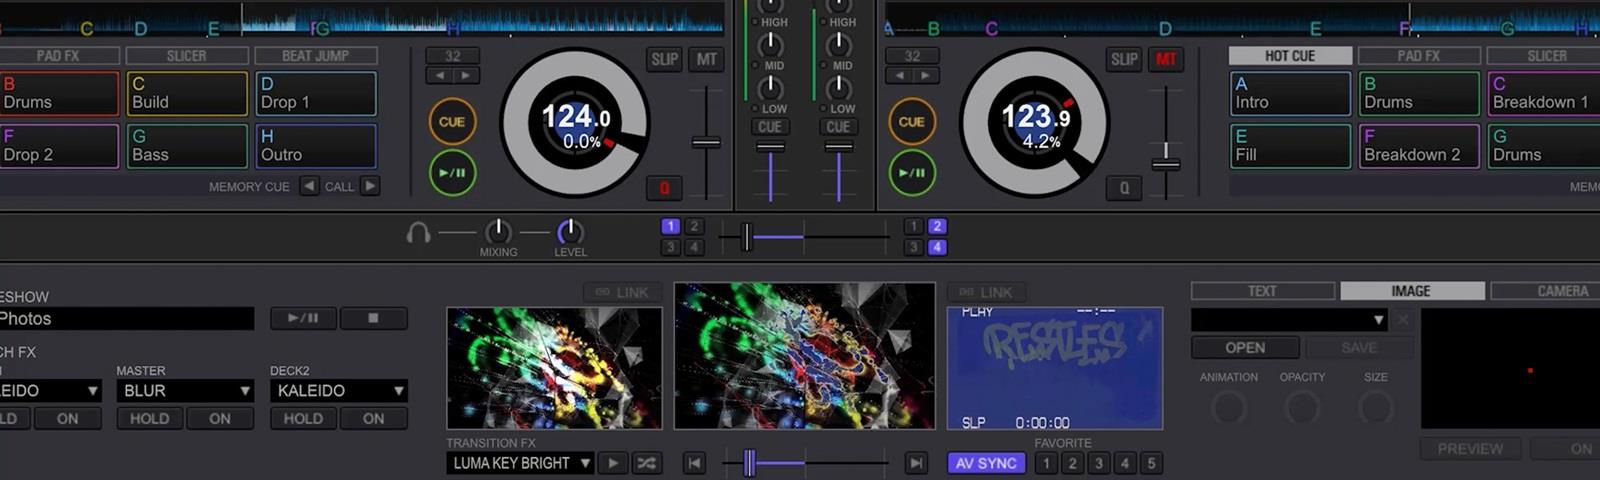 Pioneer DJ Rekordbox Video Plus Software